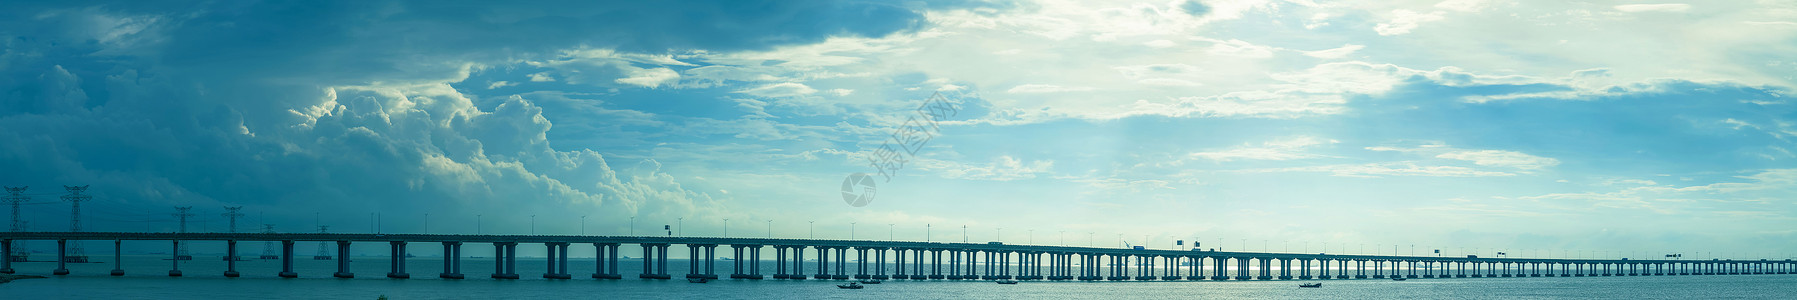 桥梁高速公路跨海大桥背景